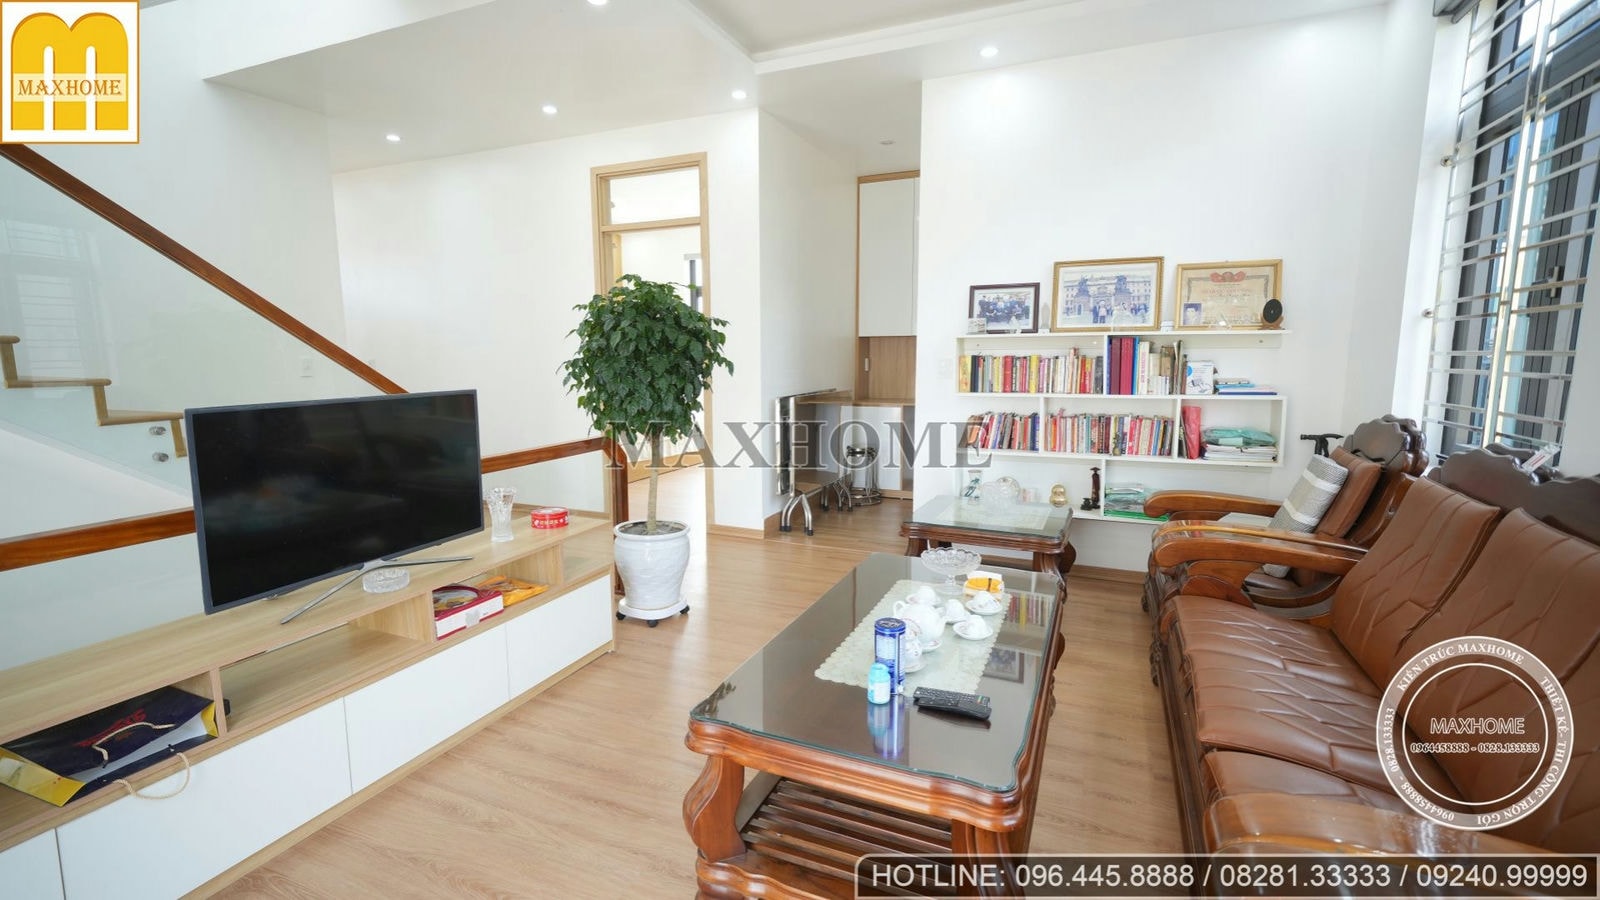 Thực tế trọn bộ nội thất hiện đại cho căn biệt thự mái bằng tại Thái Bình